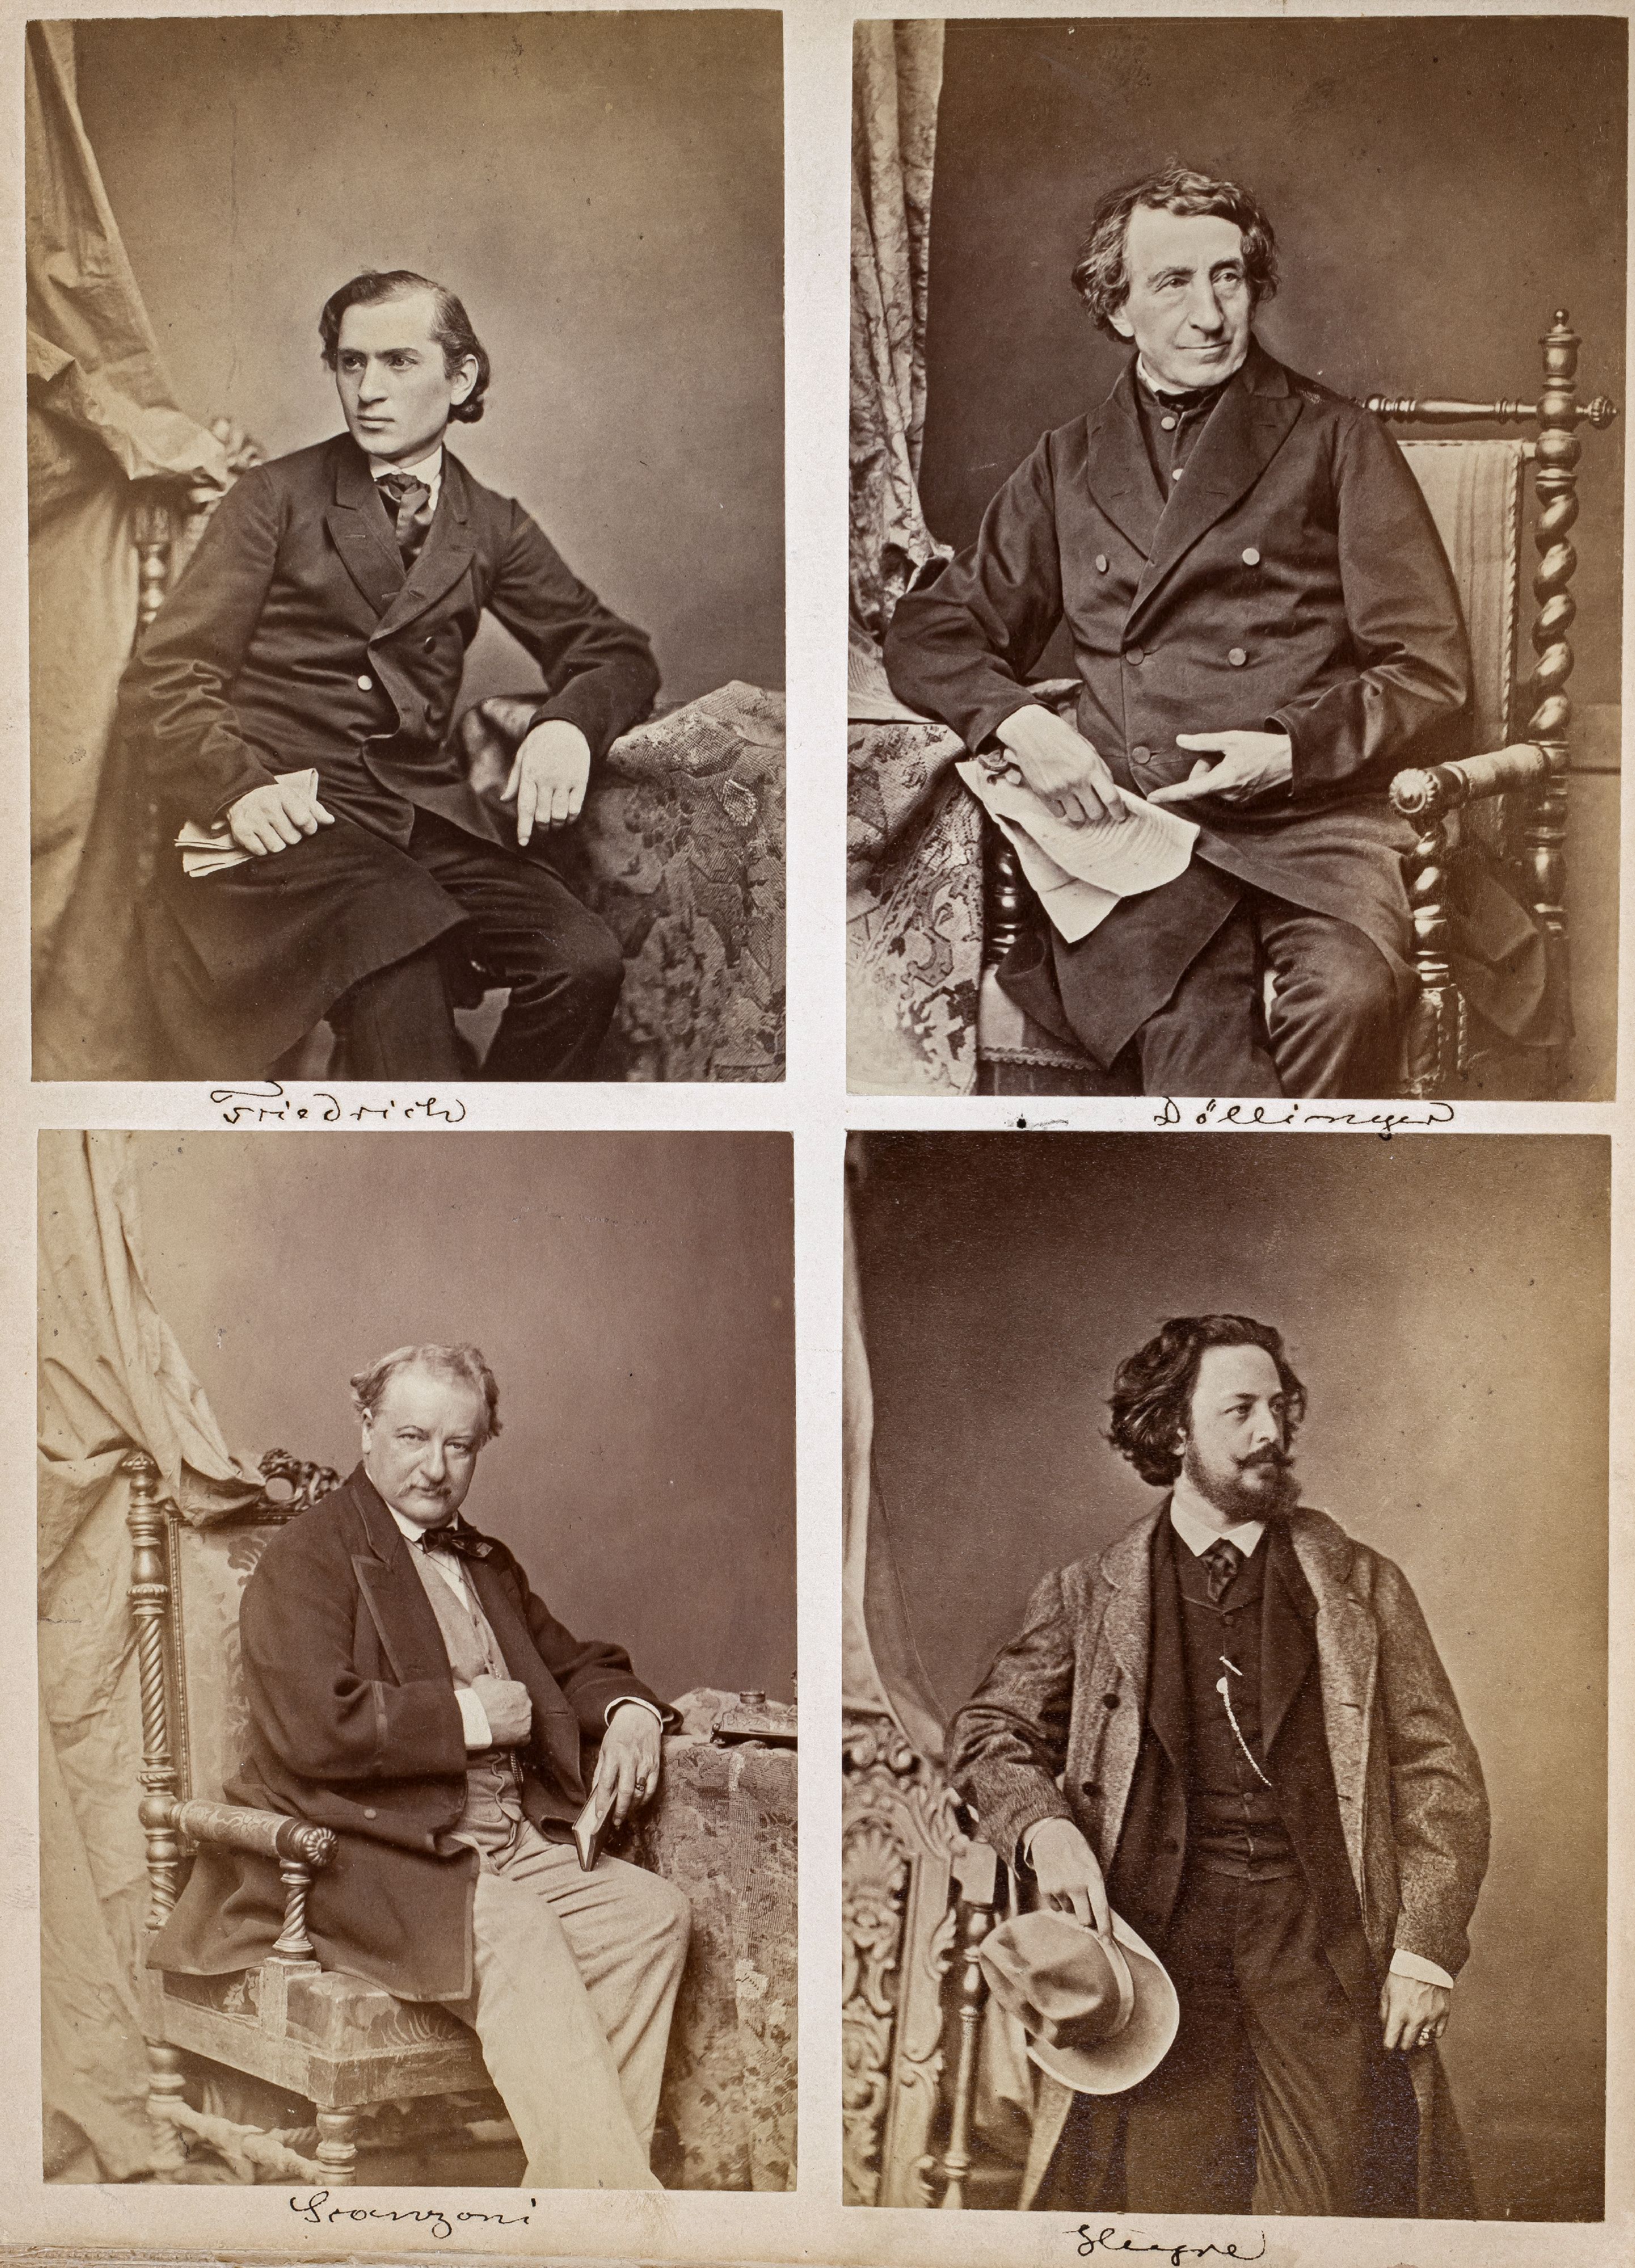 FOTOGRAFIE | Hanfstaengl, Franz | 1807 Baiernrain bei Tölz - 1877 München - Image 6 of 25